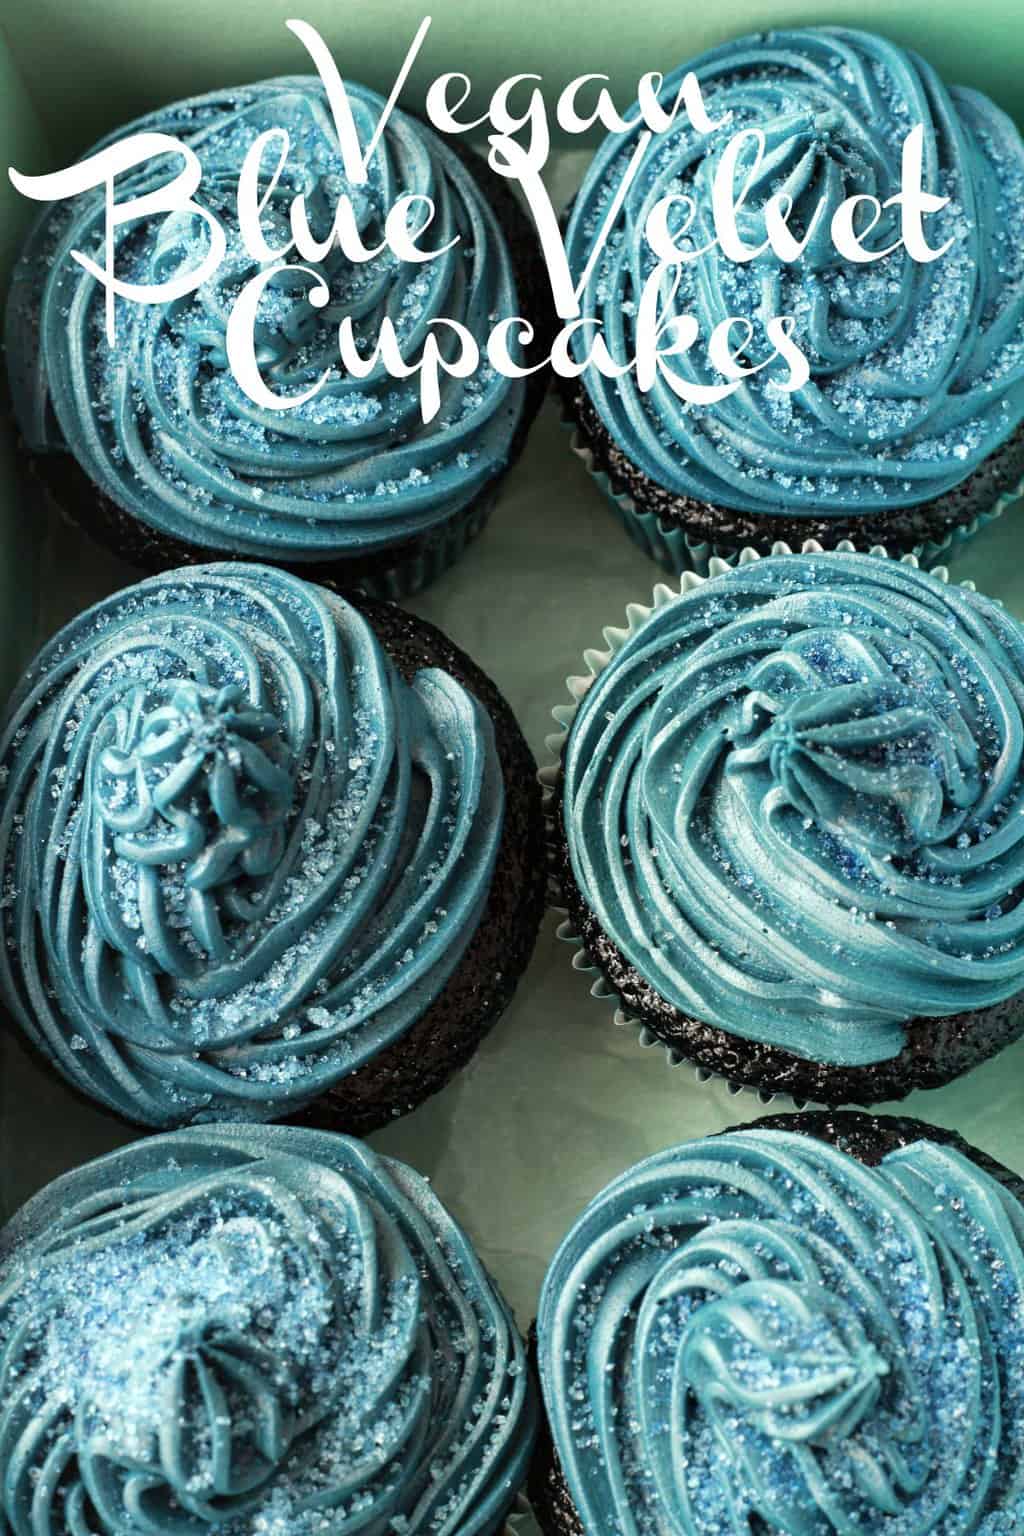 Blue Velvet Cupcakes with Blue Velvet Frosting - Moist, spongey, velvety and delicious! #vegan #lovingitvegan #bluevelvet #cupcakes #dessert